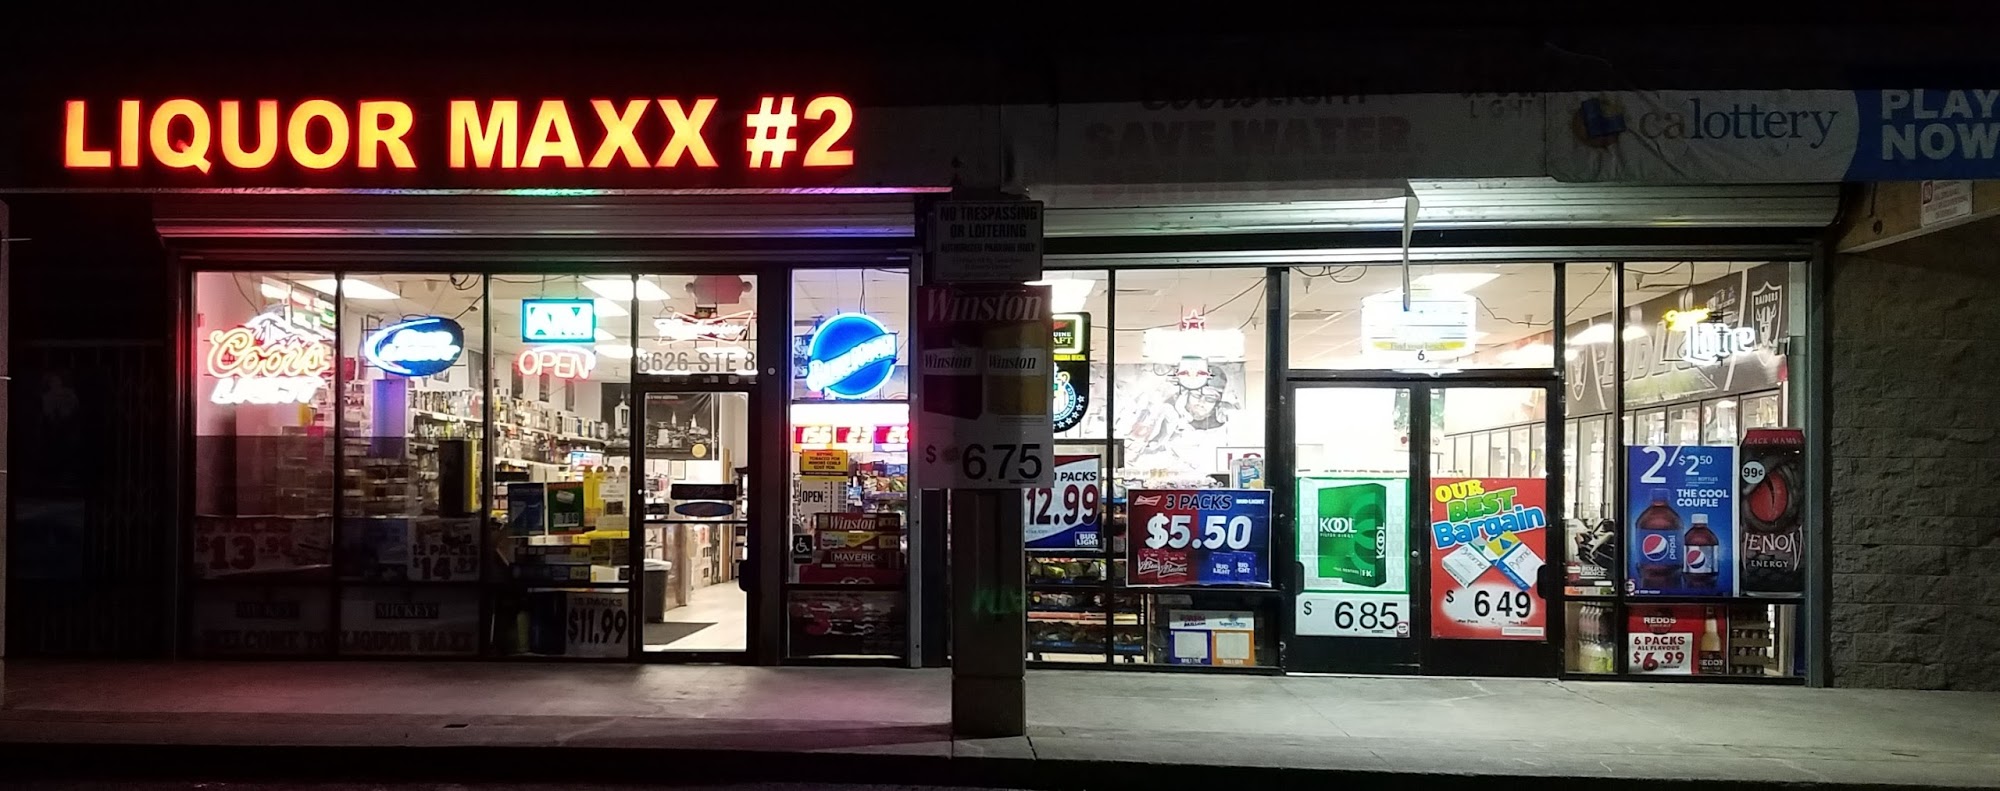 Liquor Maxx #2 - Lycamobile Store